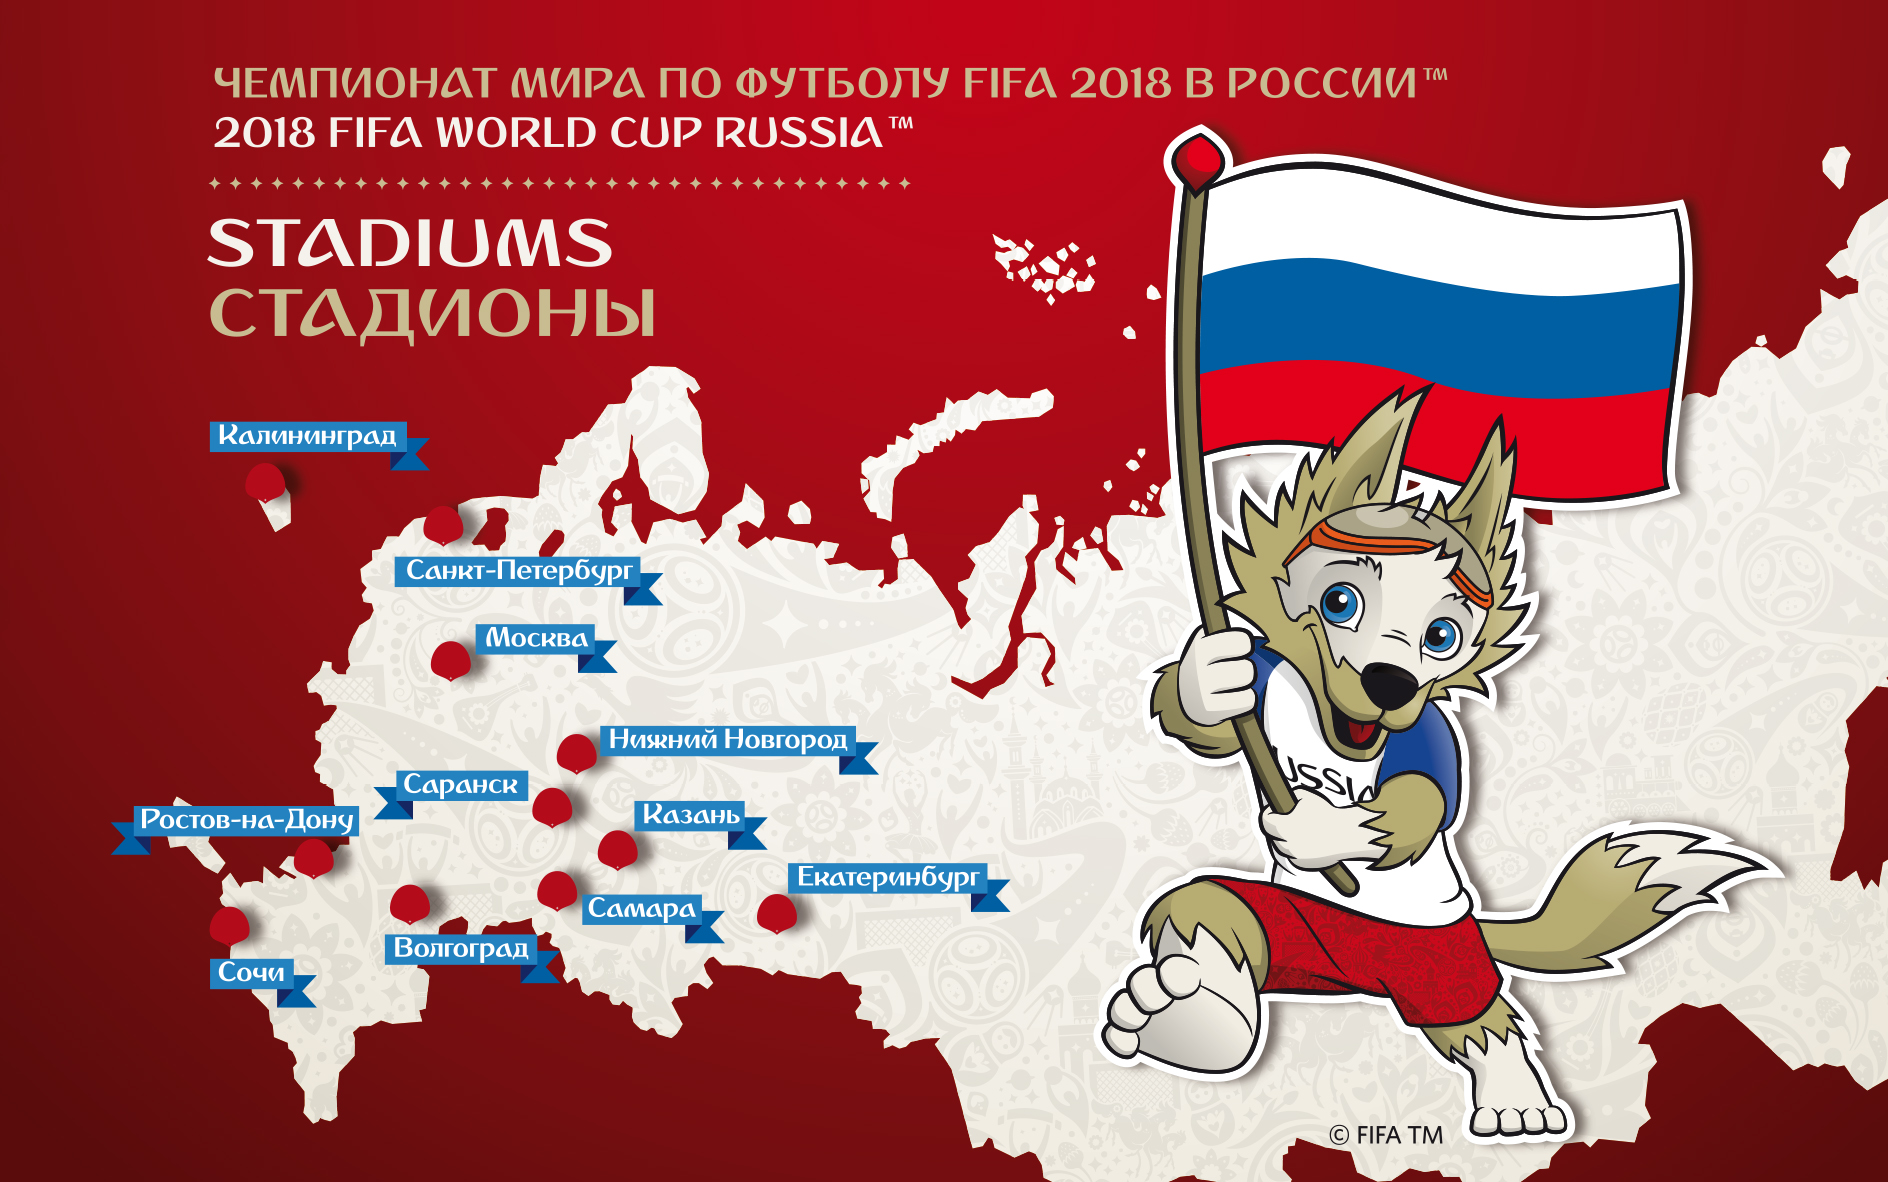 В отделения Почты России поступил марочный буклет, посвященный стадионам Чемпионата мира по футболу FIFA 2018 в России™